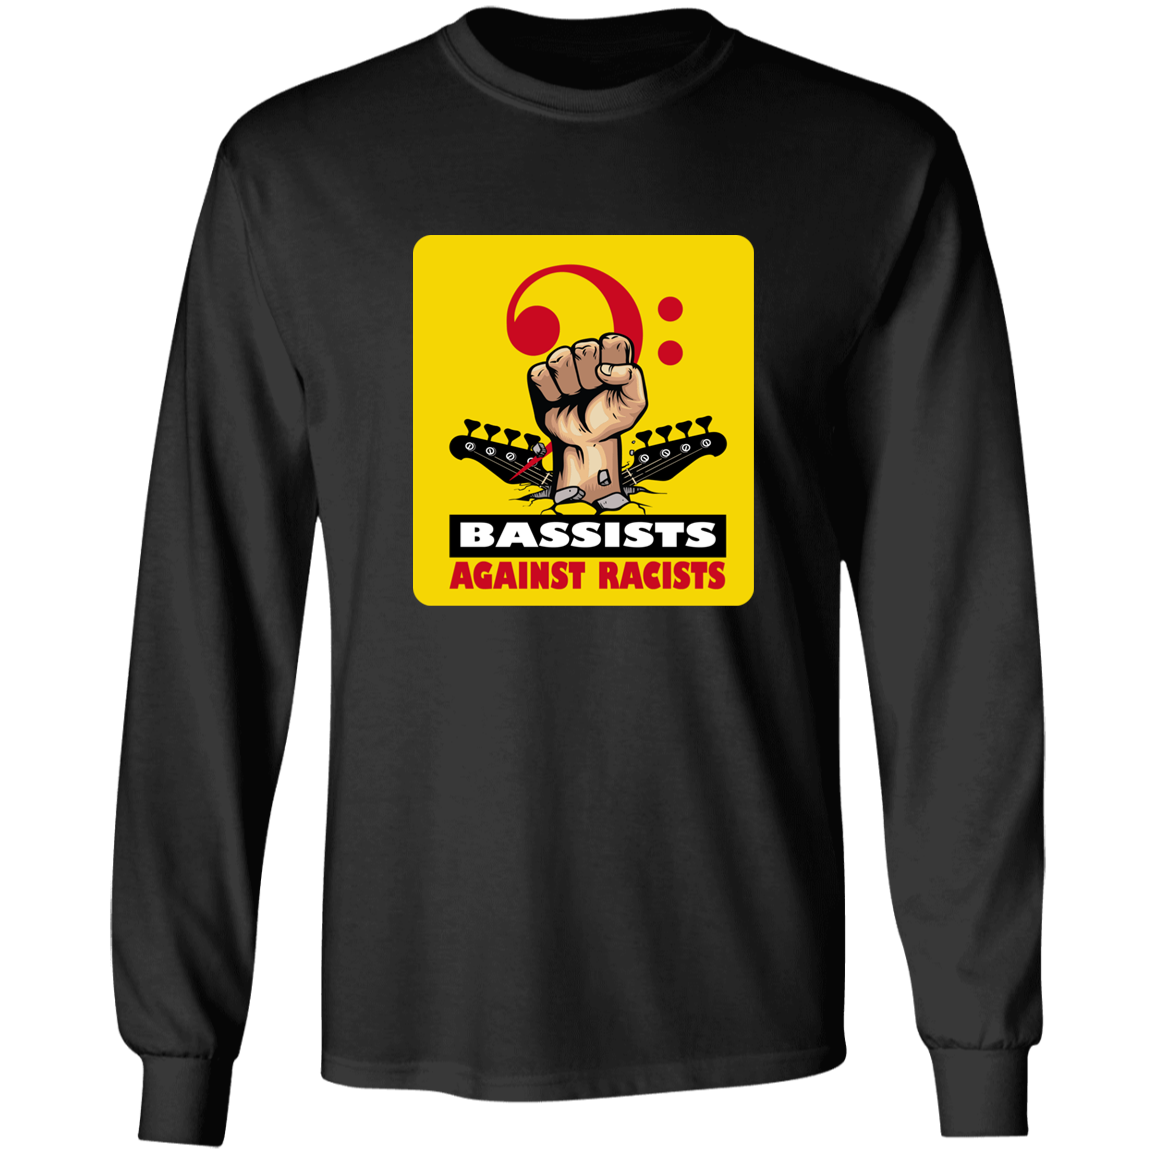 BASSIST AGAINST RACISTS - Longsleeve T-Shirt